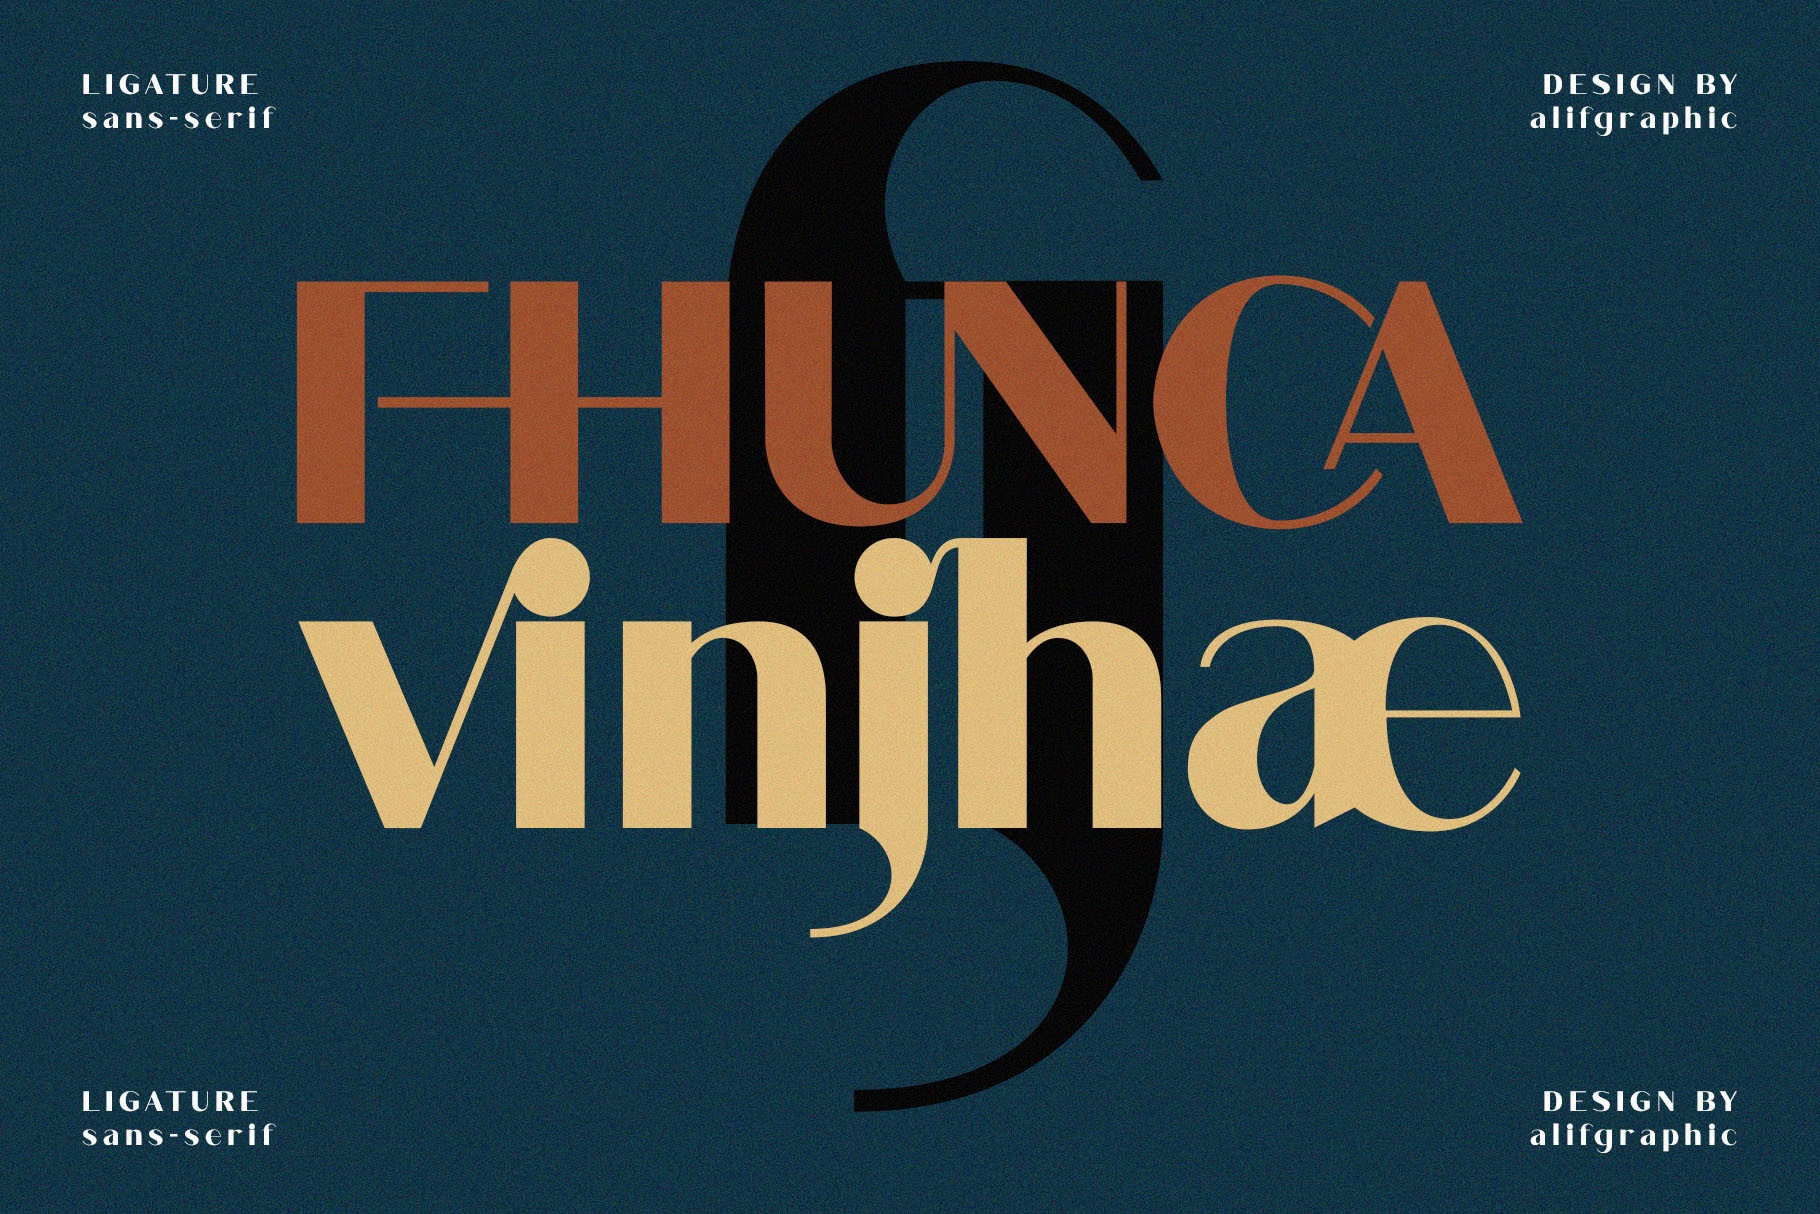 Fhunca Vinjhae font preview image #3